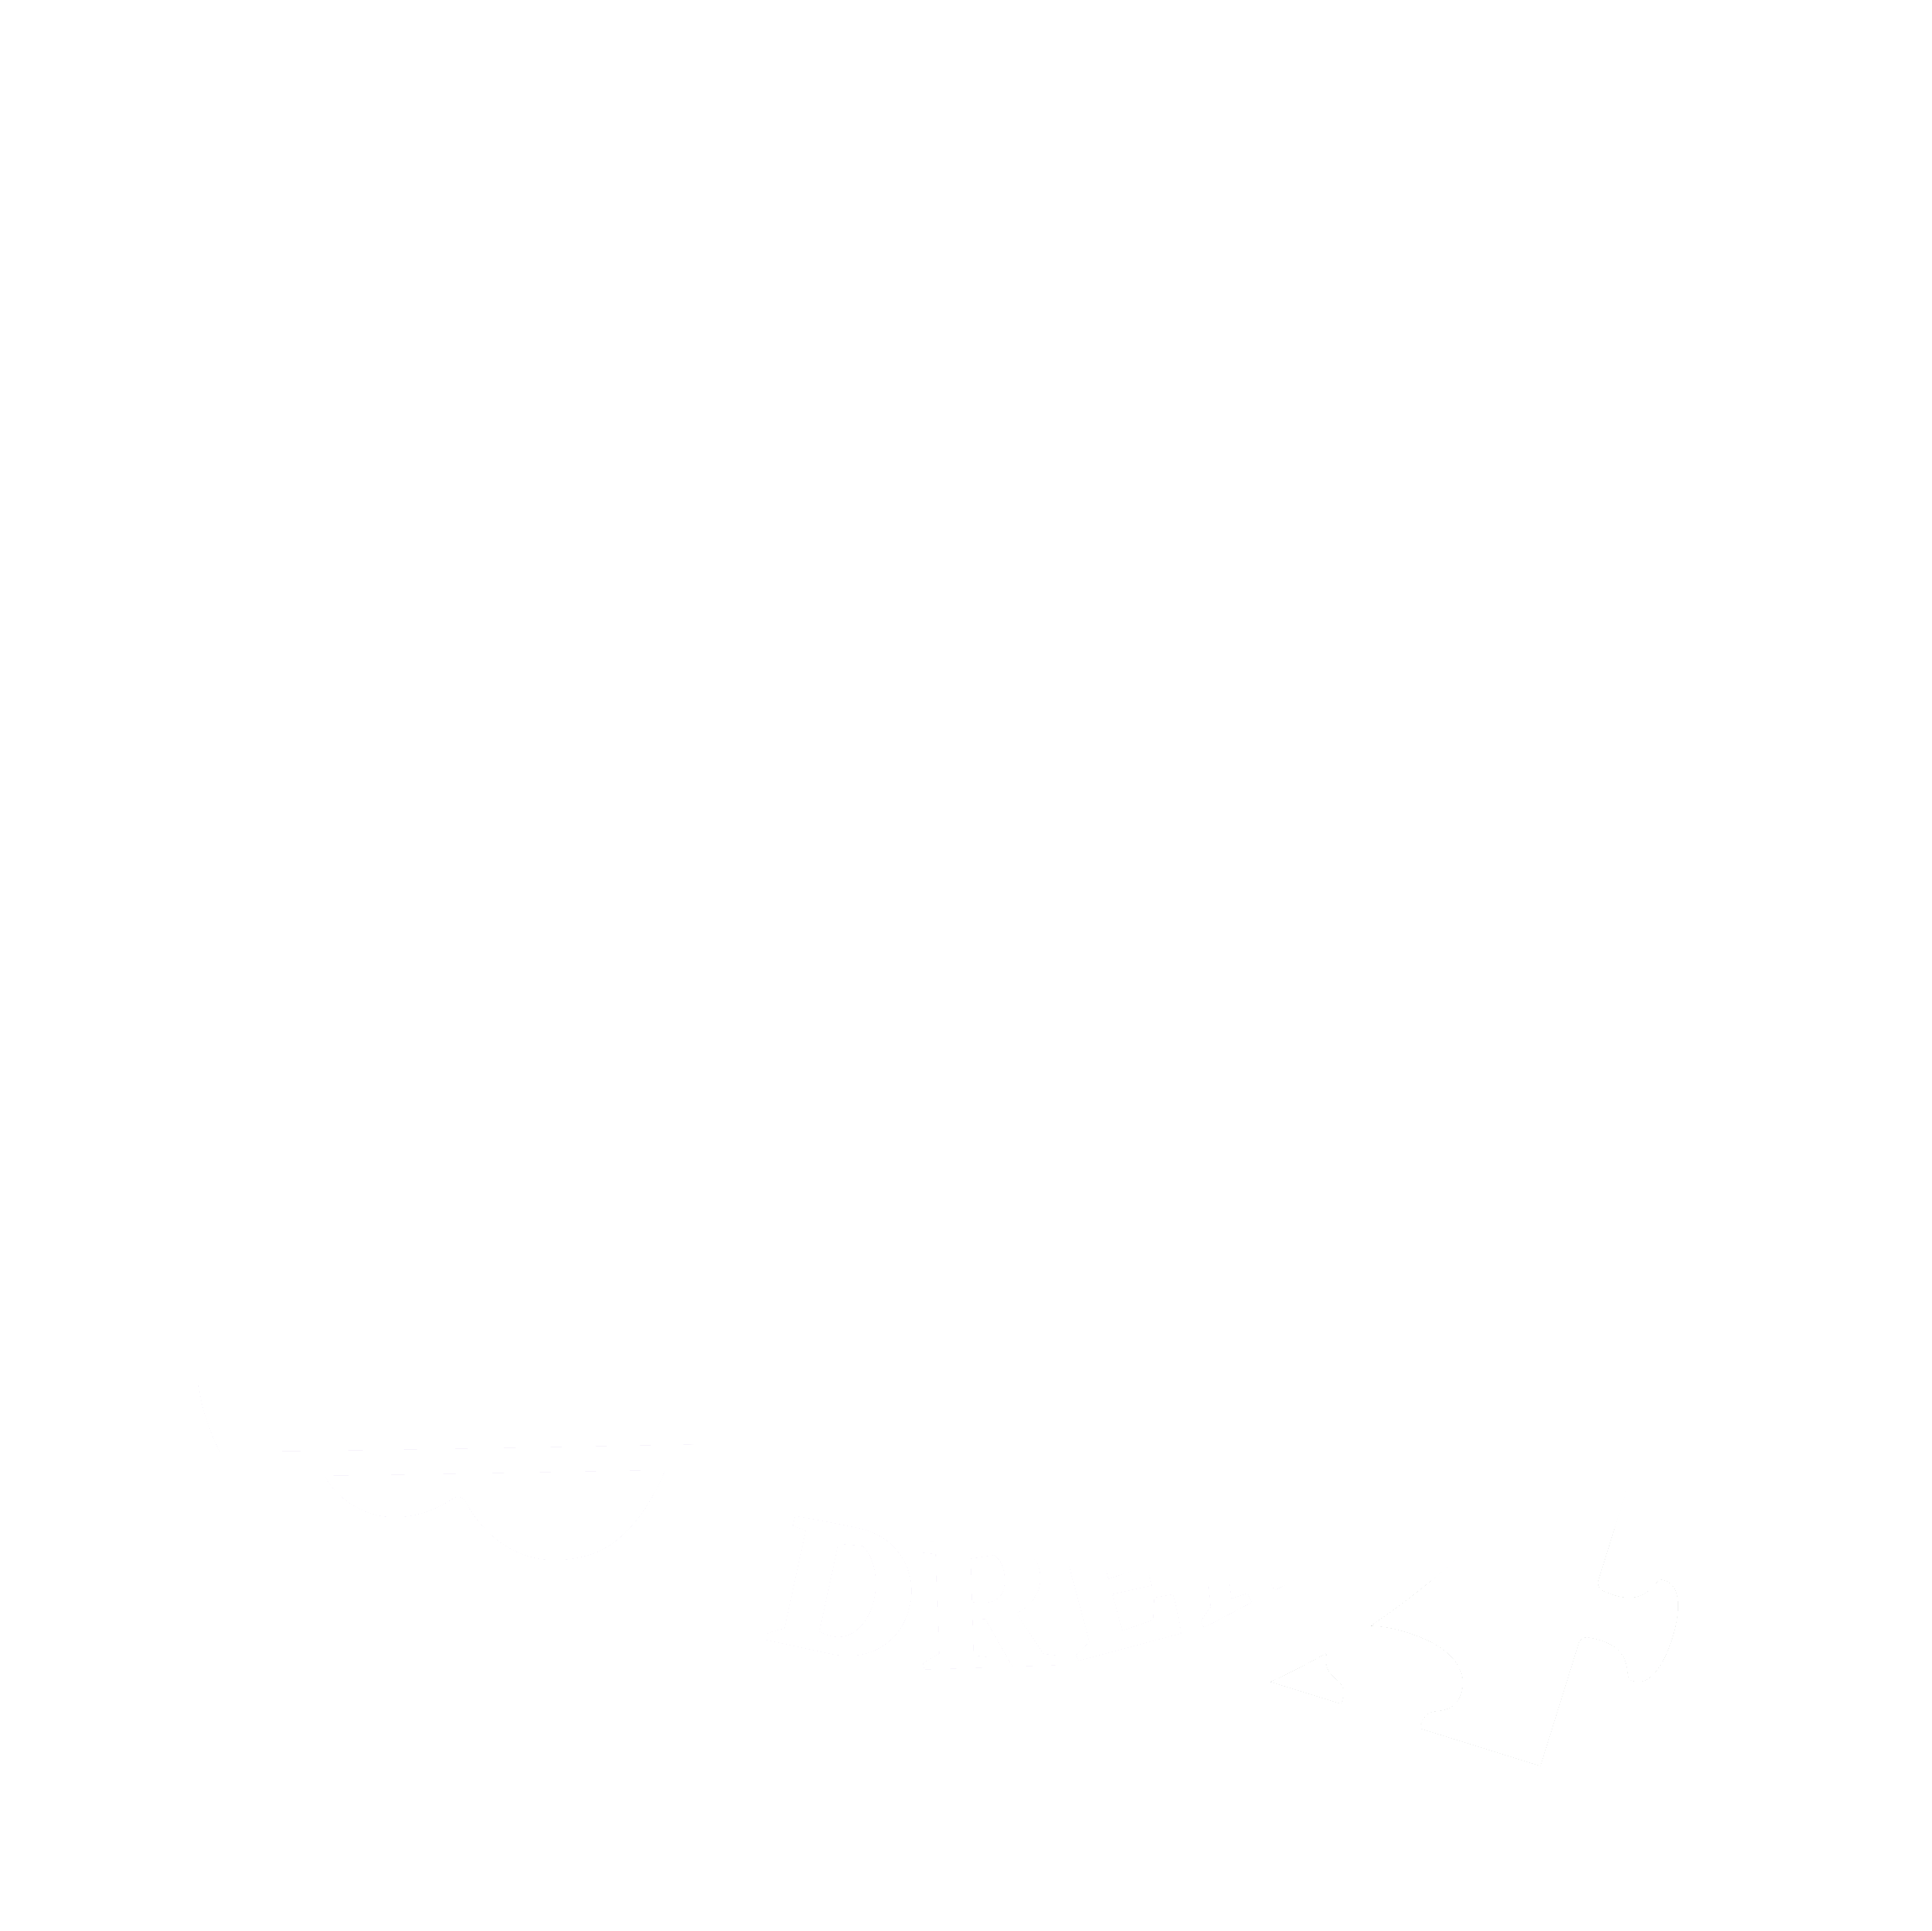 Dare to Dream Businesses